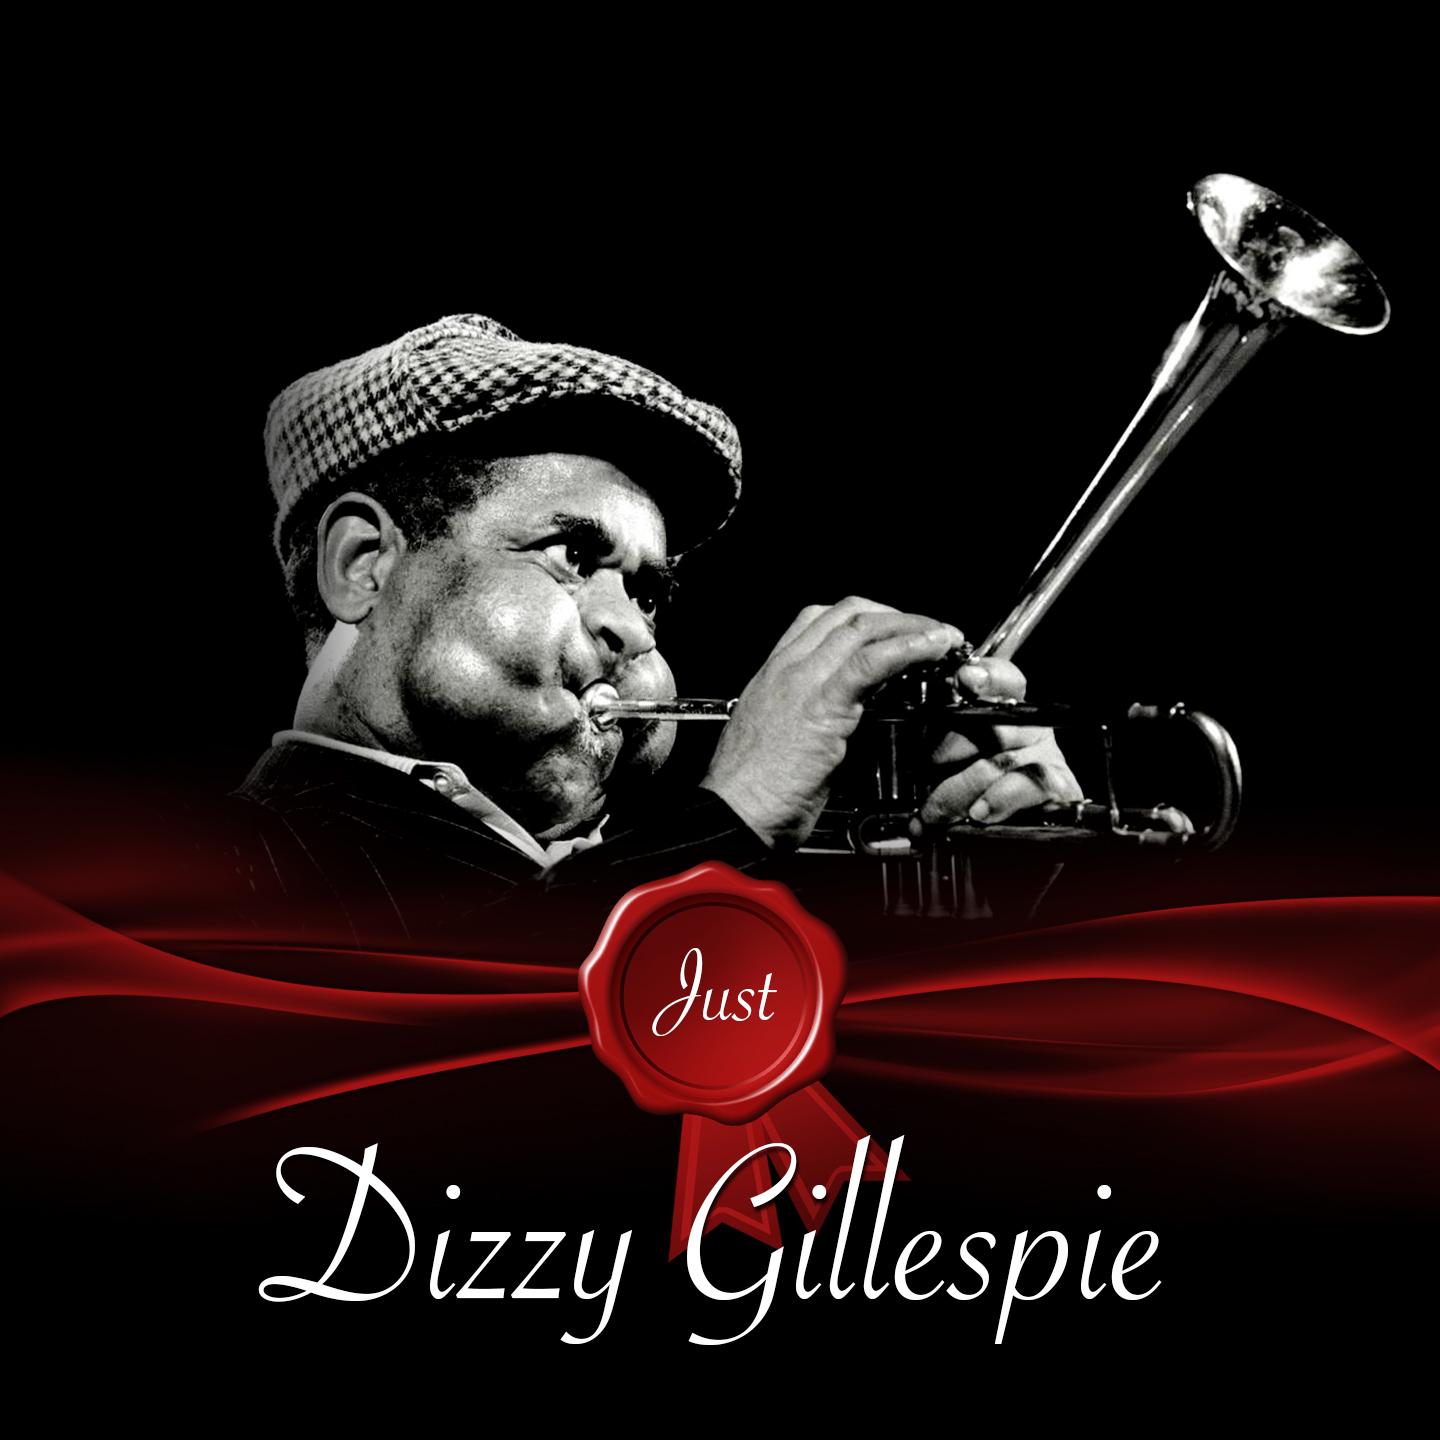 Just / Dizzy Gillespie